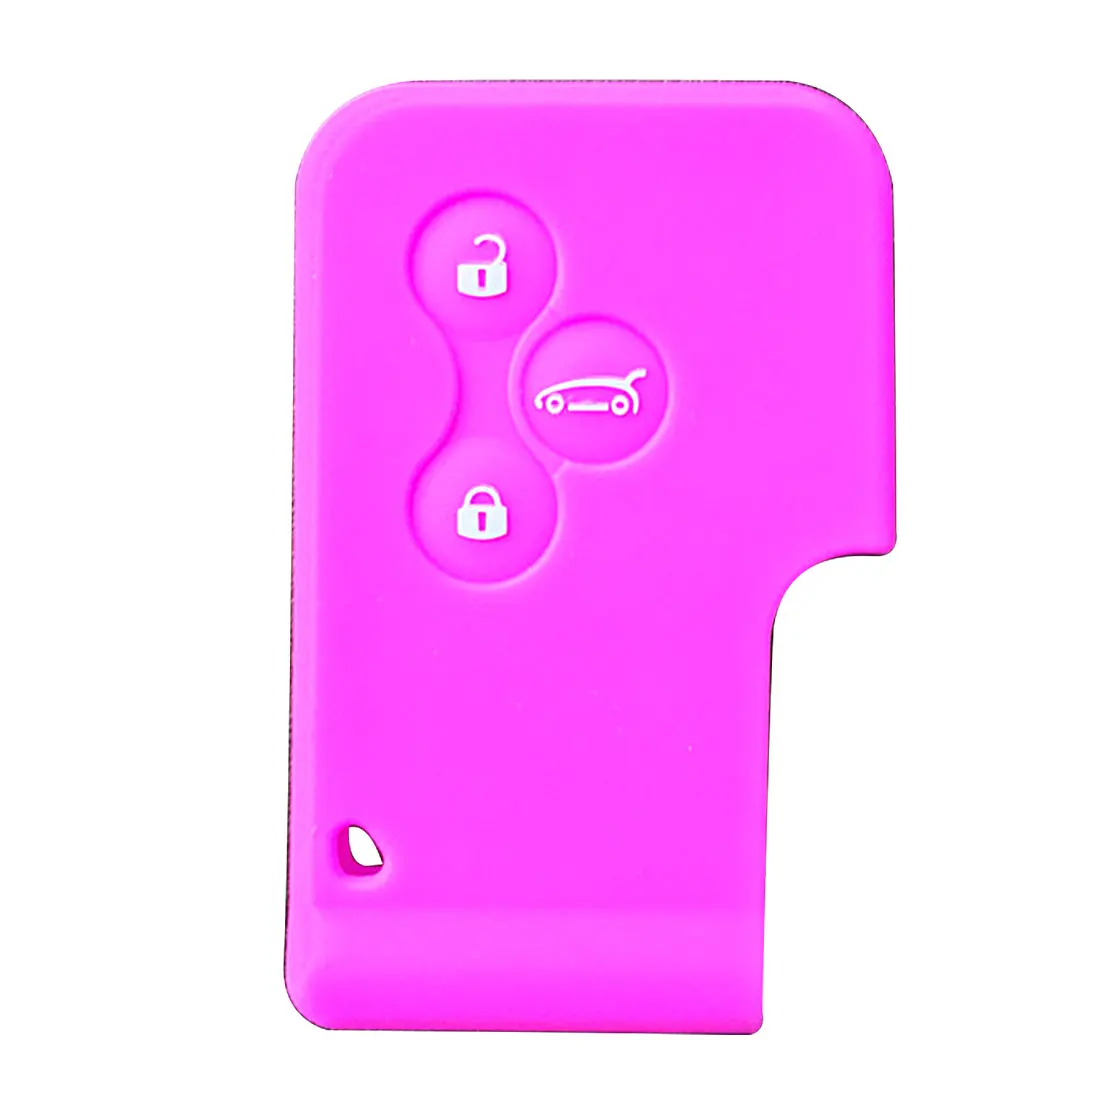 Dewtreetali 3 кнопки дистанционного силиконового резинового ключа автомобиля чехол для Renault Megane R.S. Сценический смарт-ключ с 3 кнопками - Название цвета: Purple